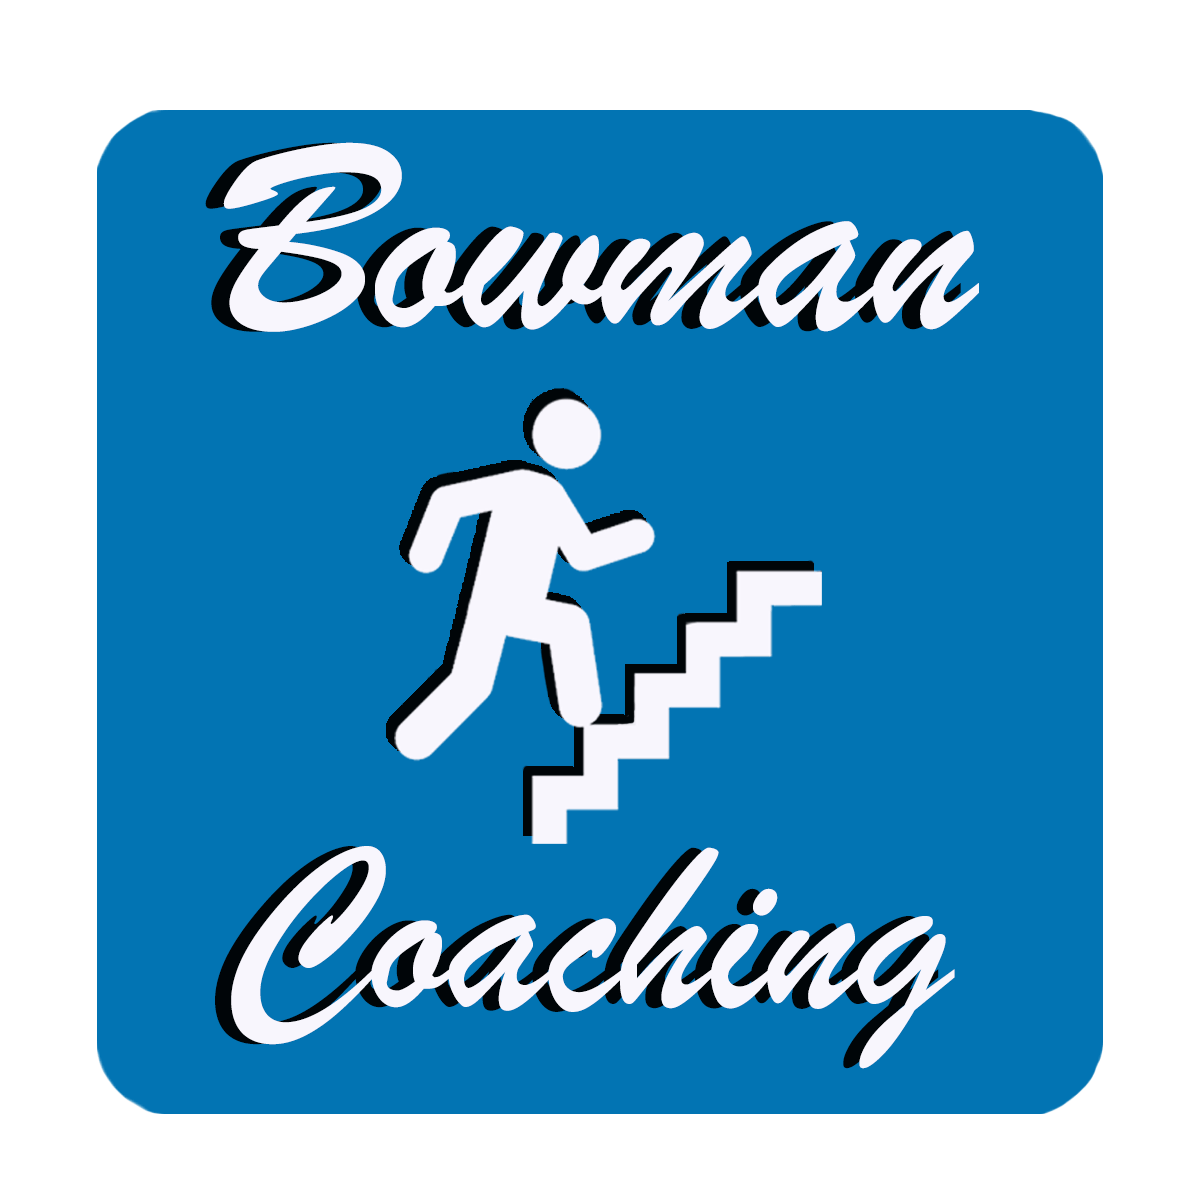 Bowman Coaching